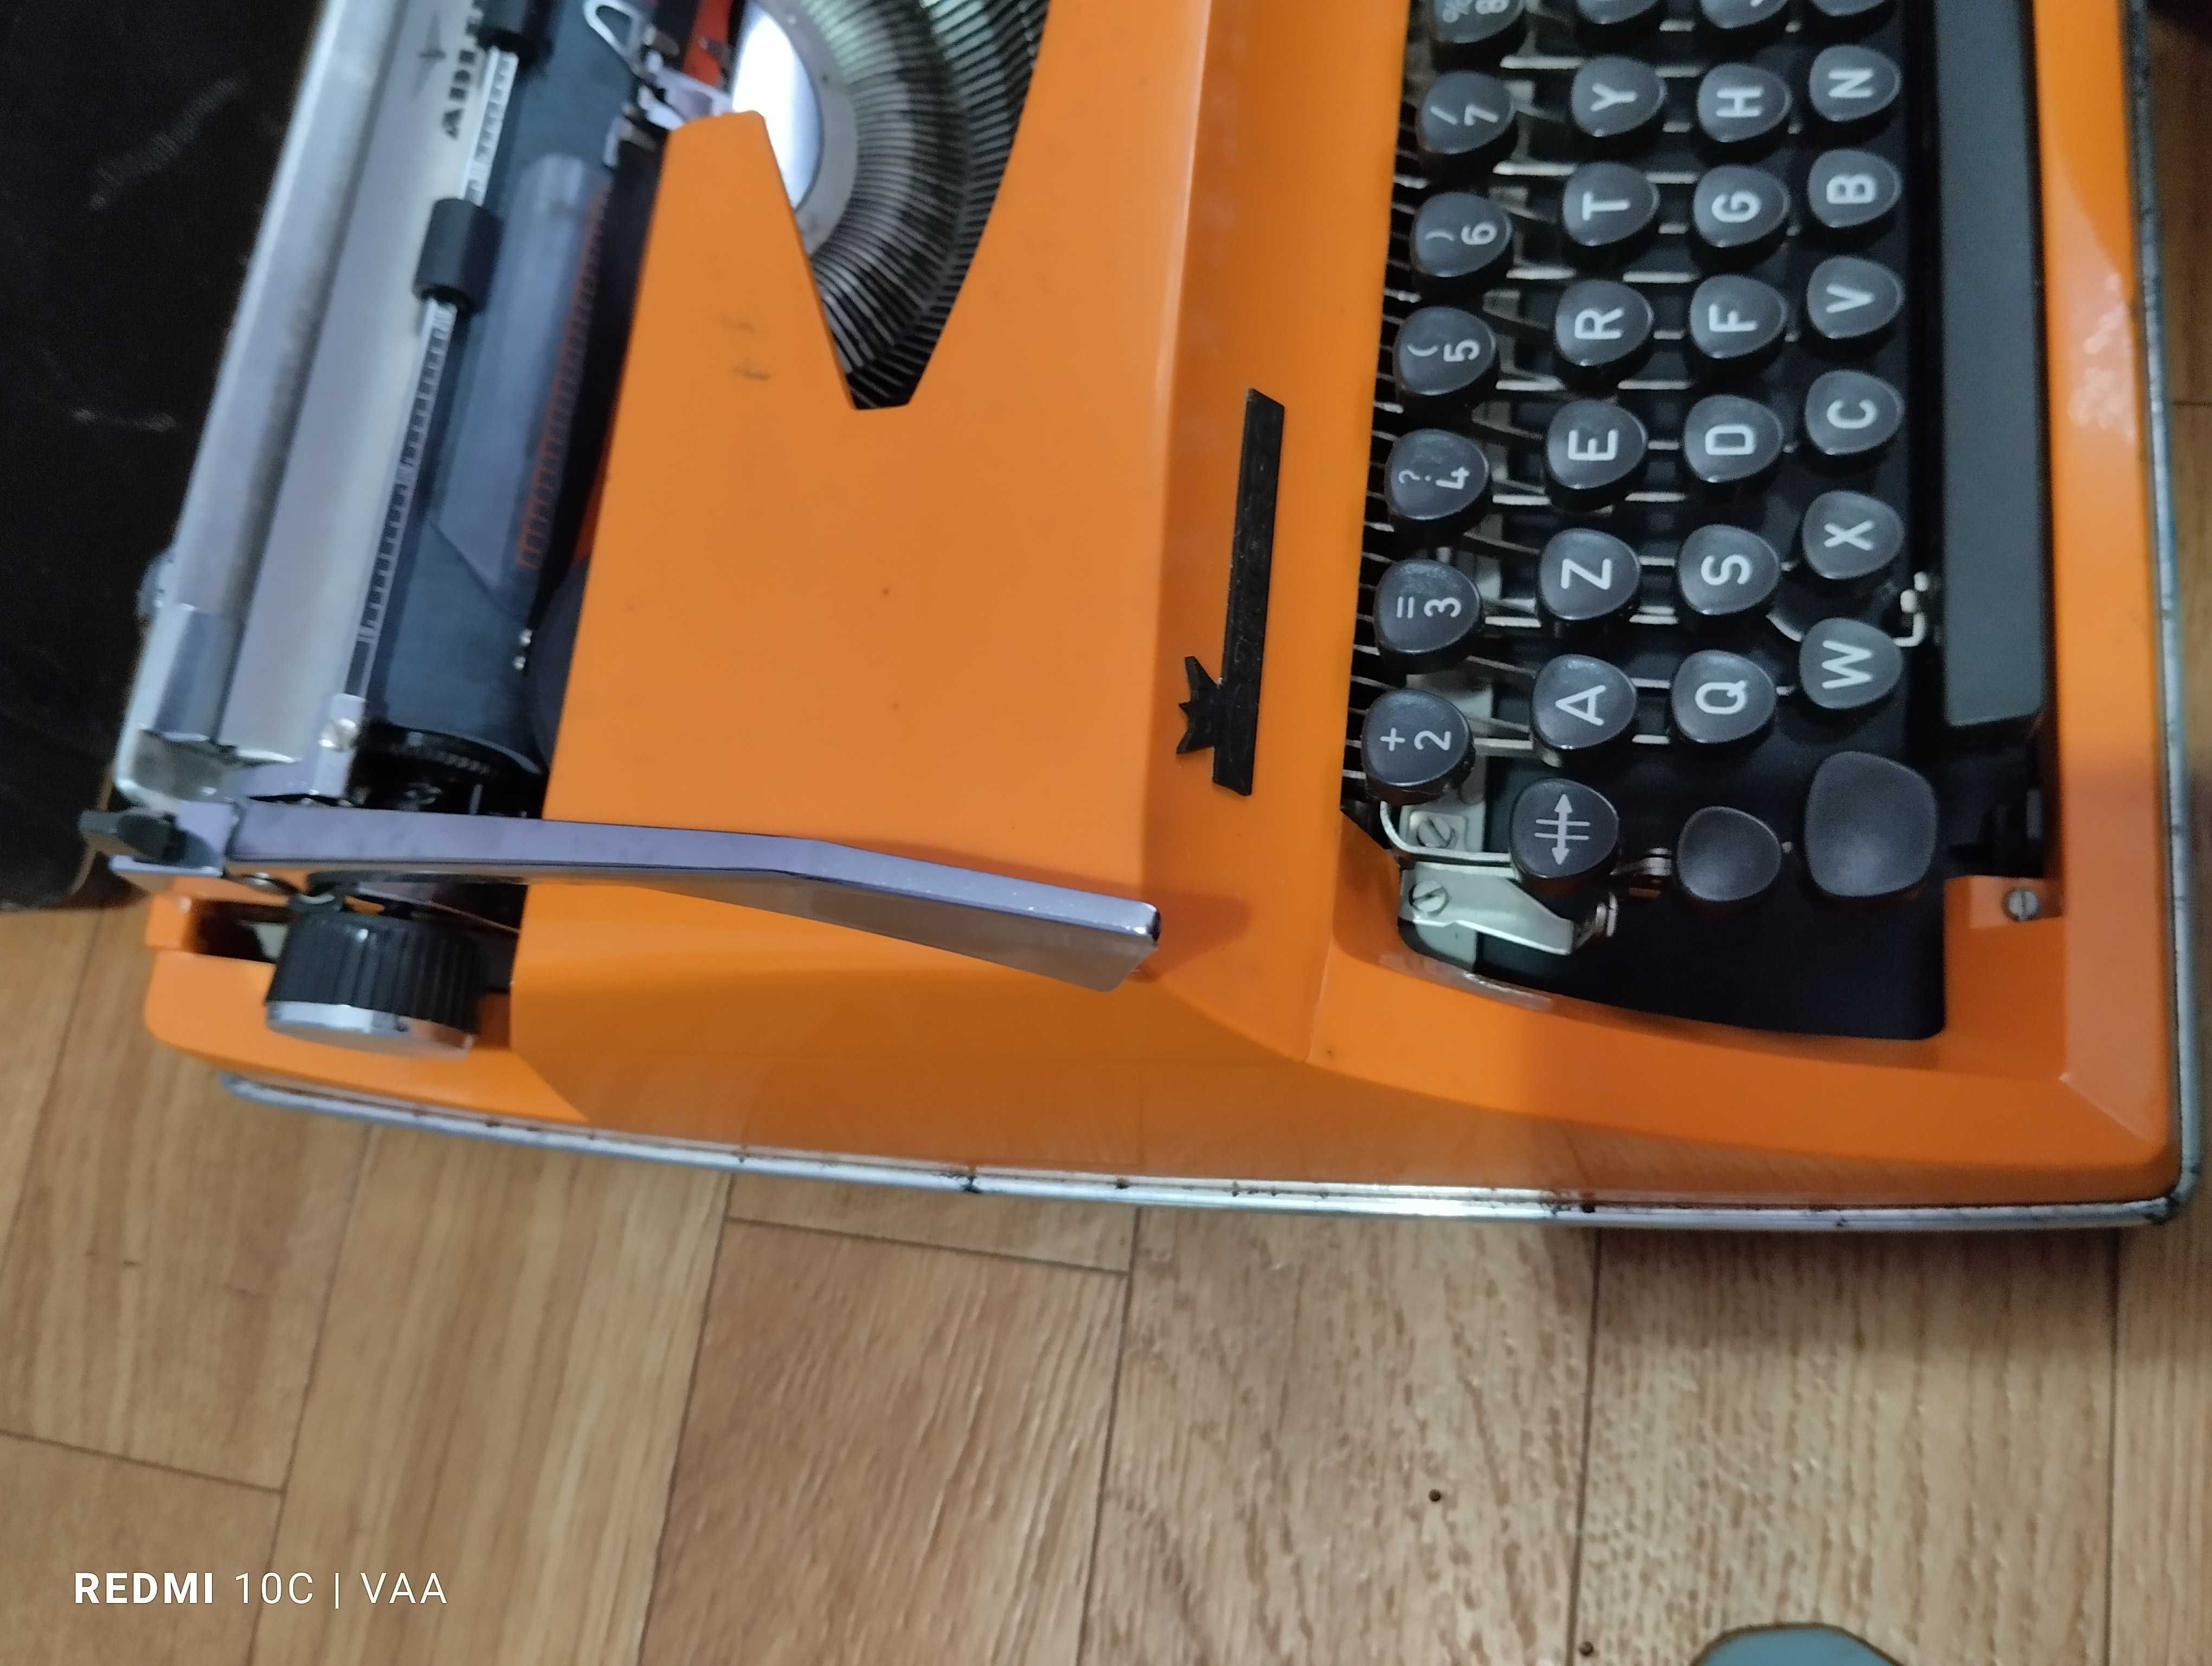 Vintage - Máquina de escrever Adler Contessa, anos 70, teclado AZERTY.